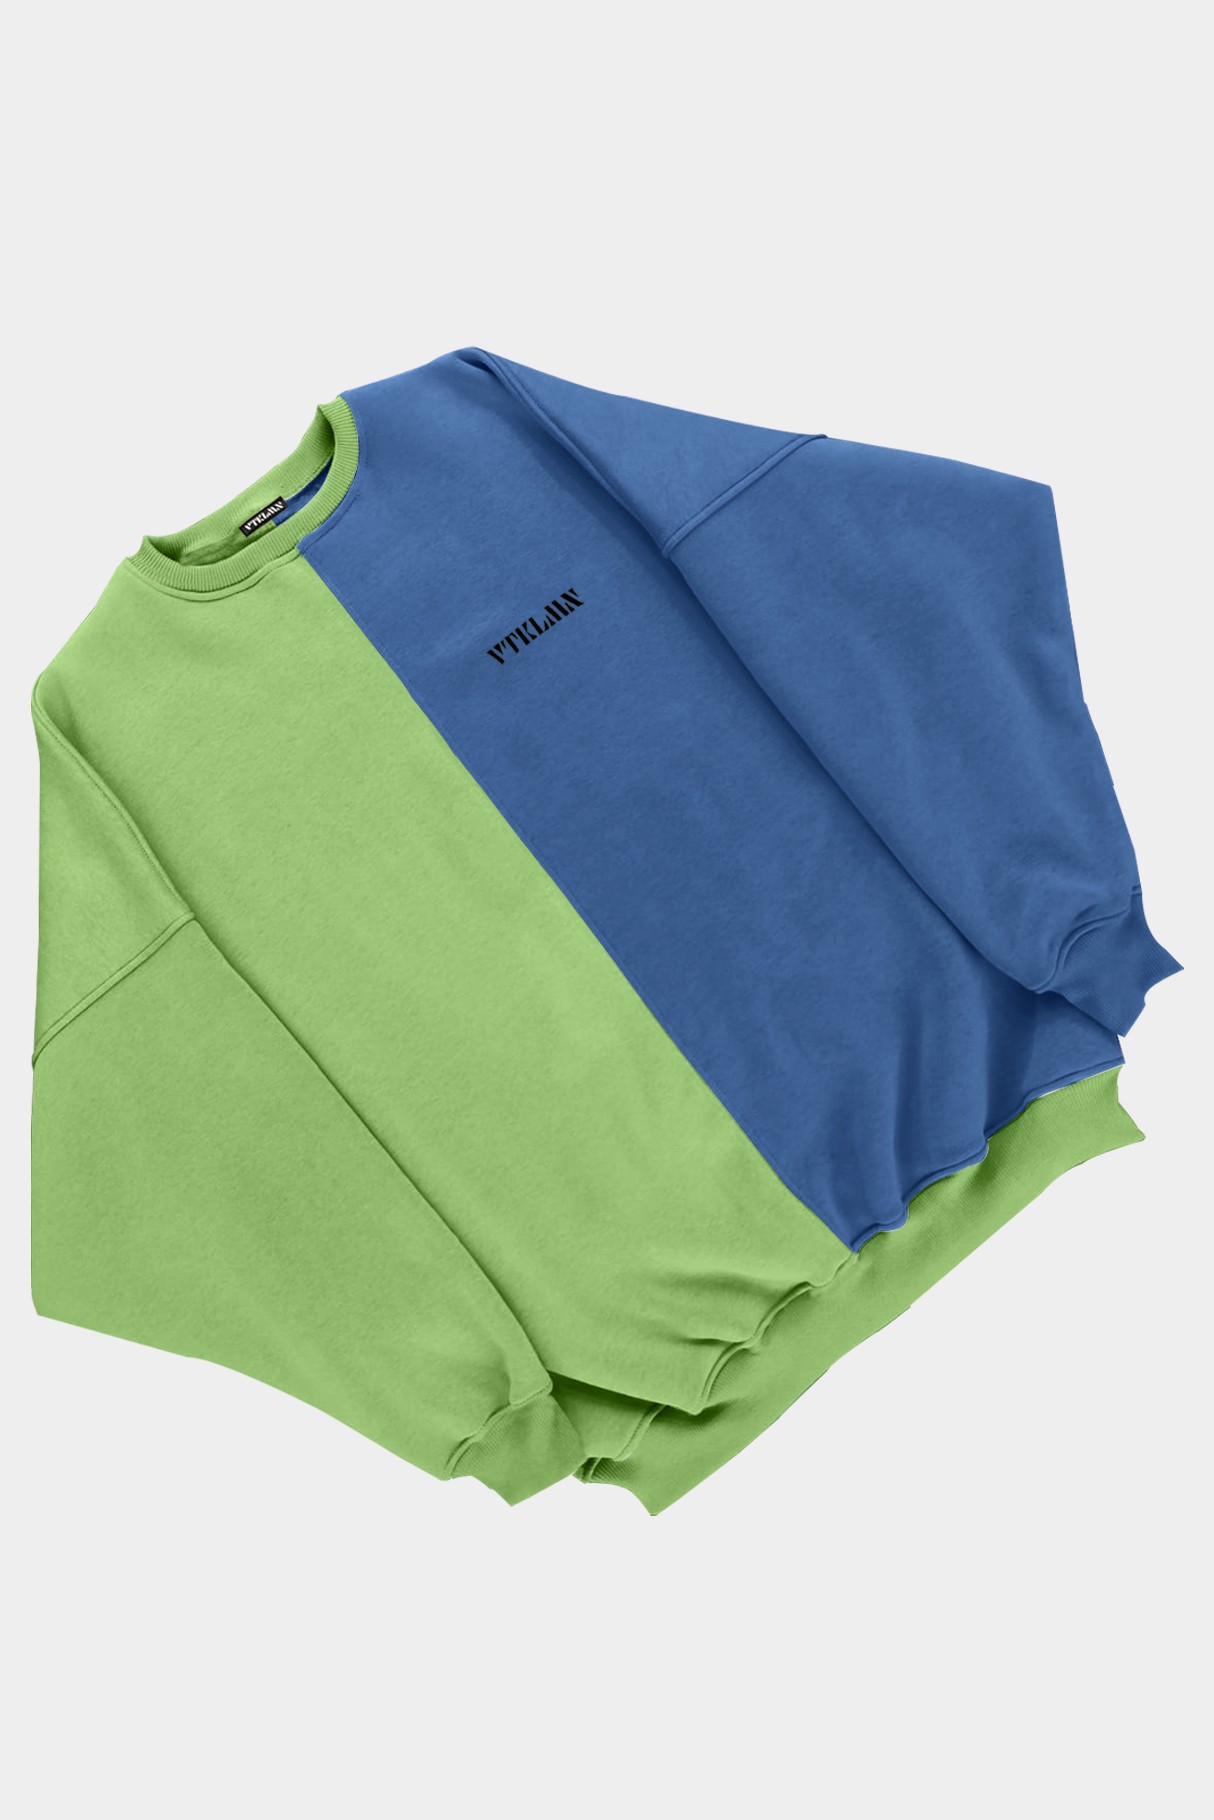  Kadın Erkek Renkli Sweatshirt - Yeşil Lacivert